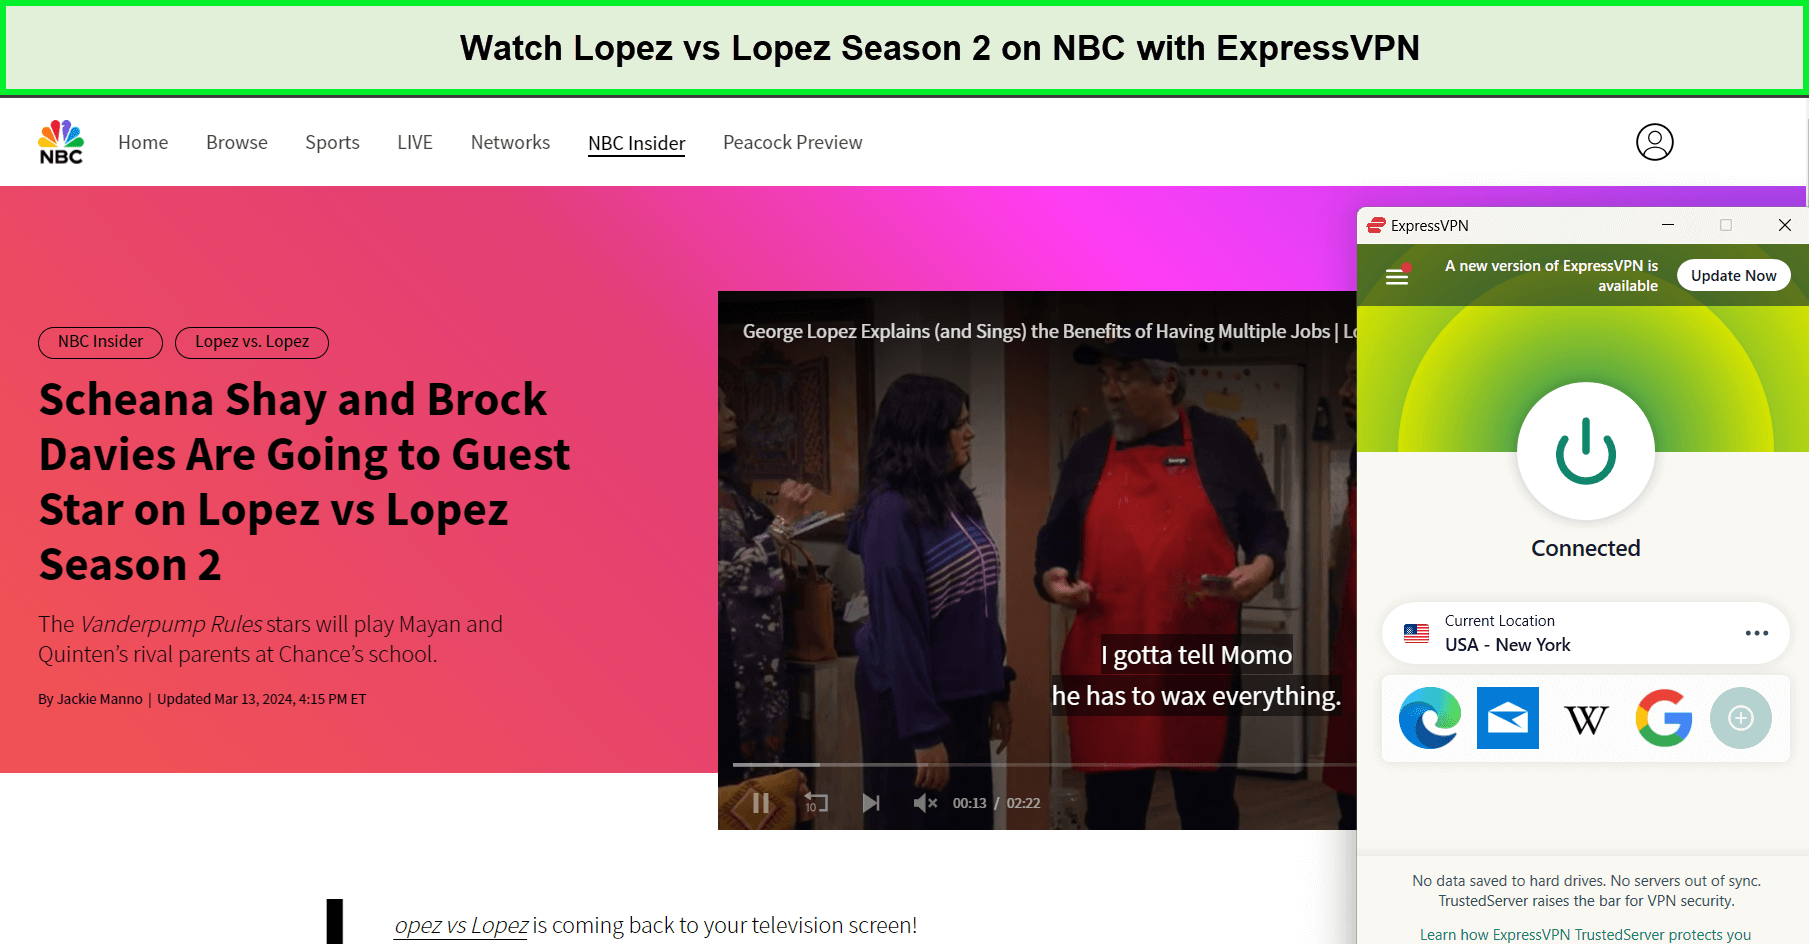 Watch-Lopez-vs-Lopez-Season-2-in-Germany-on-NBC